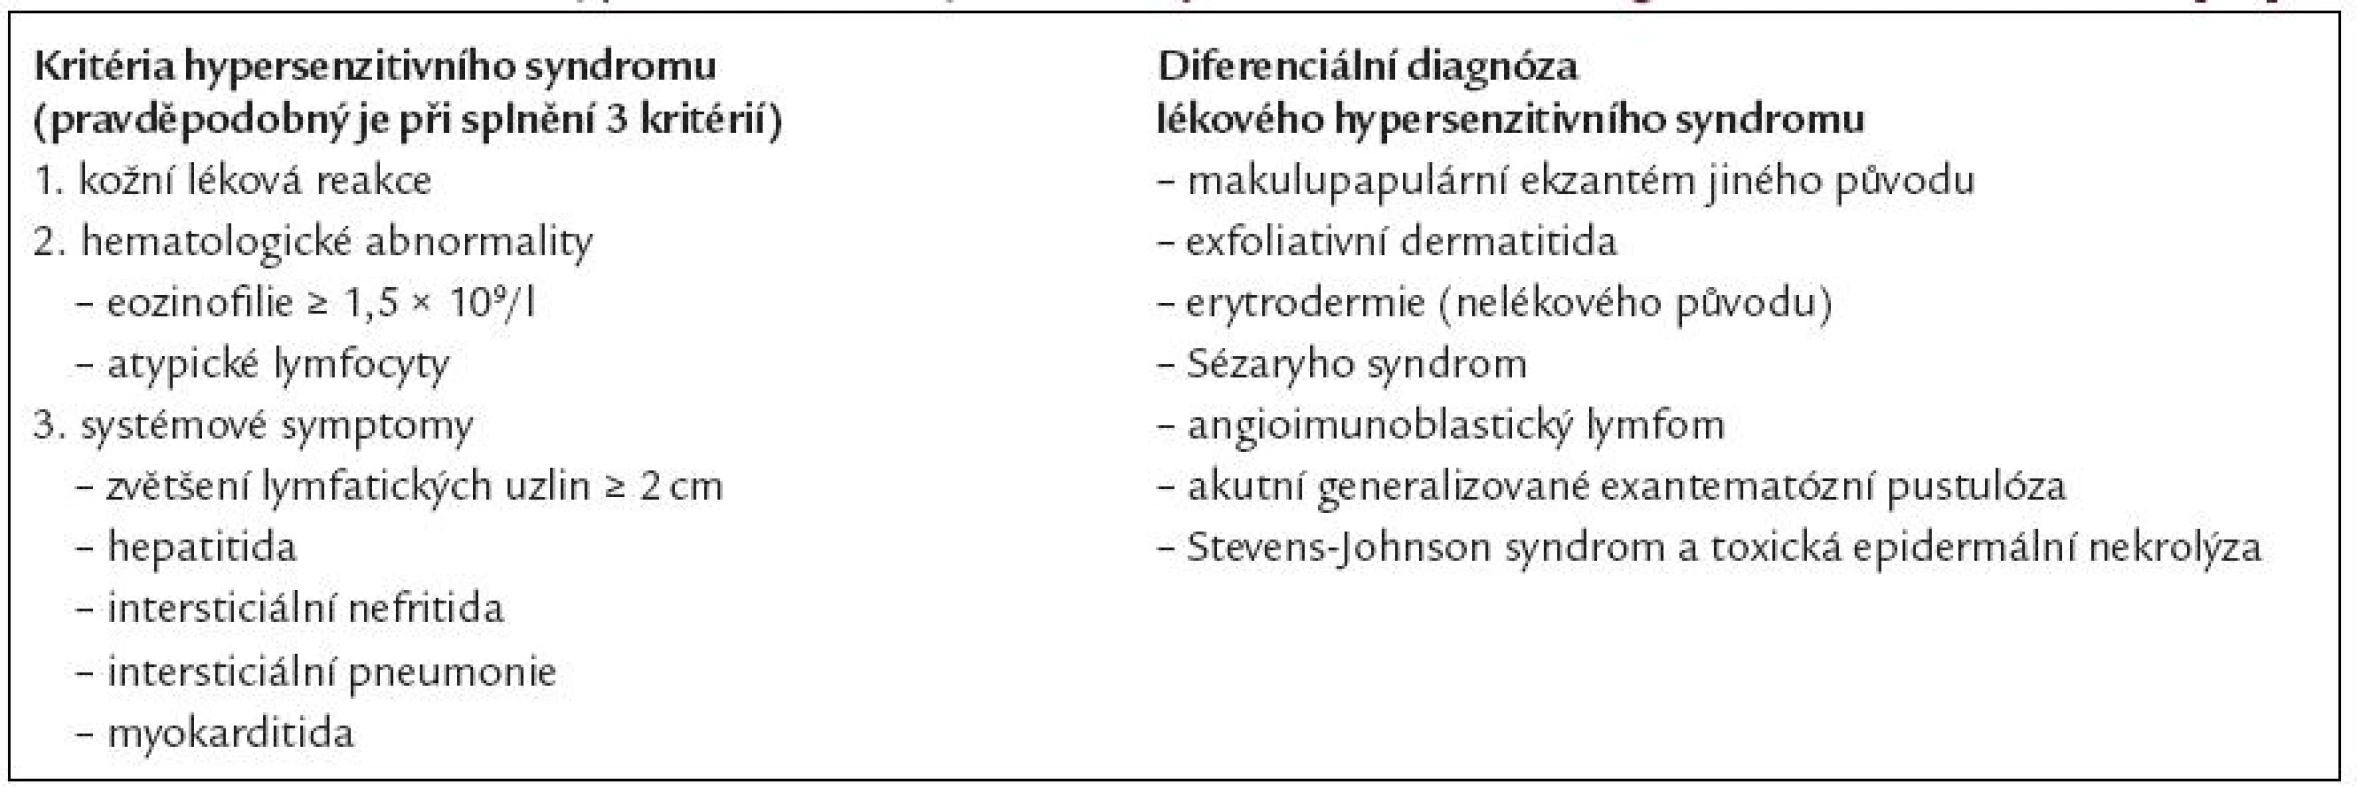 Kritéria lékového hypersenzitivního syndromu a jeho diferenciálně diagnostické možnosti. Podle [39].